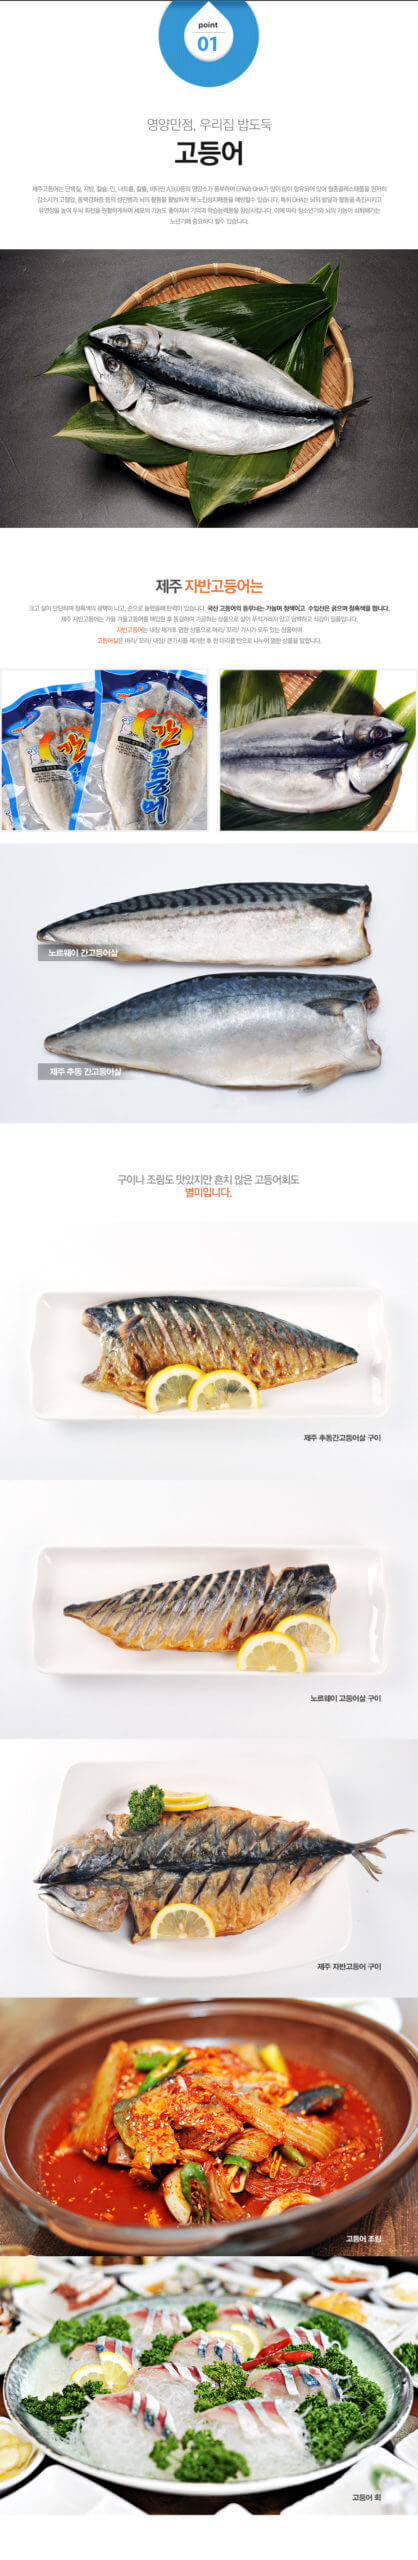 韓國食品-濟州 鯖魚 250g以上